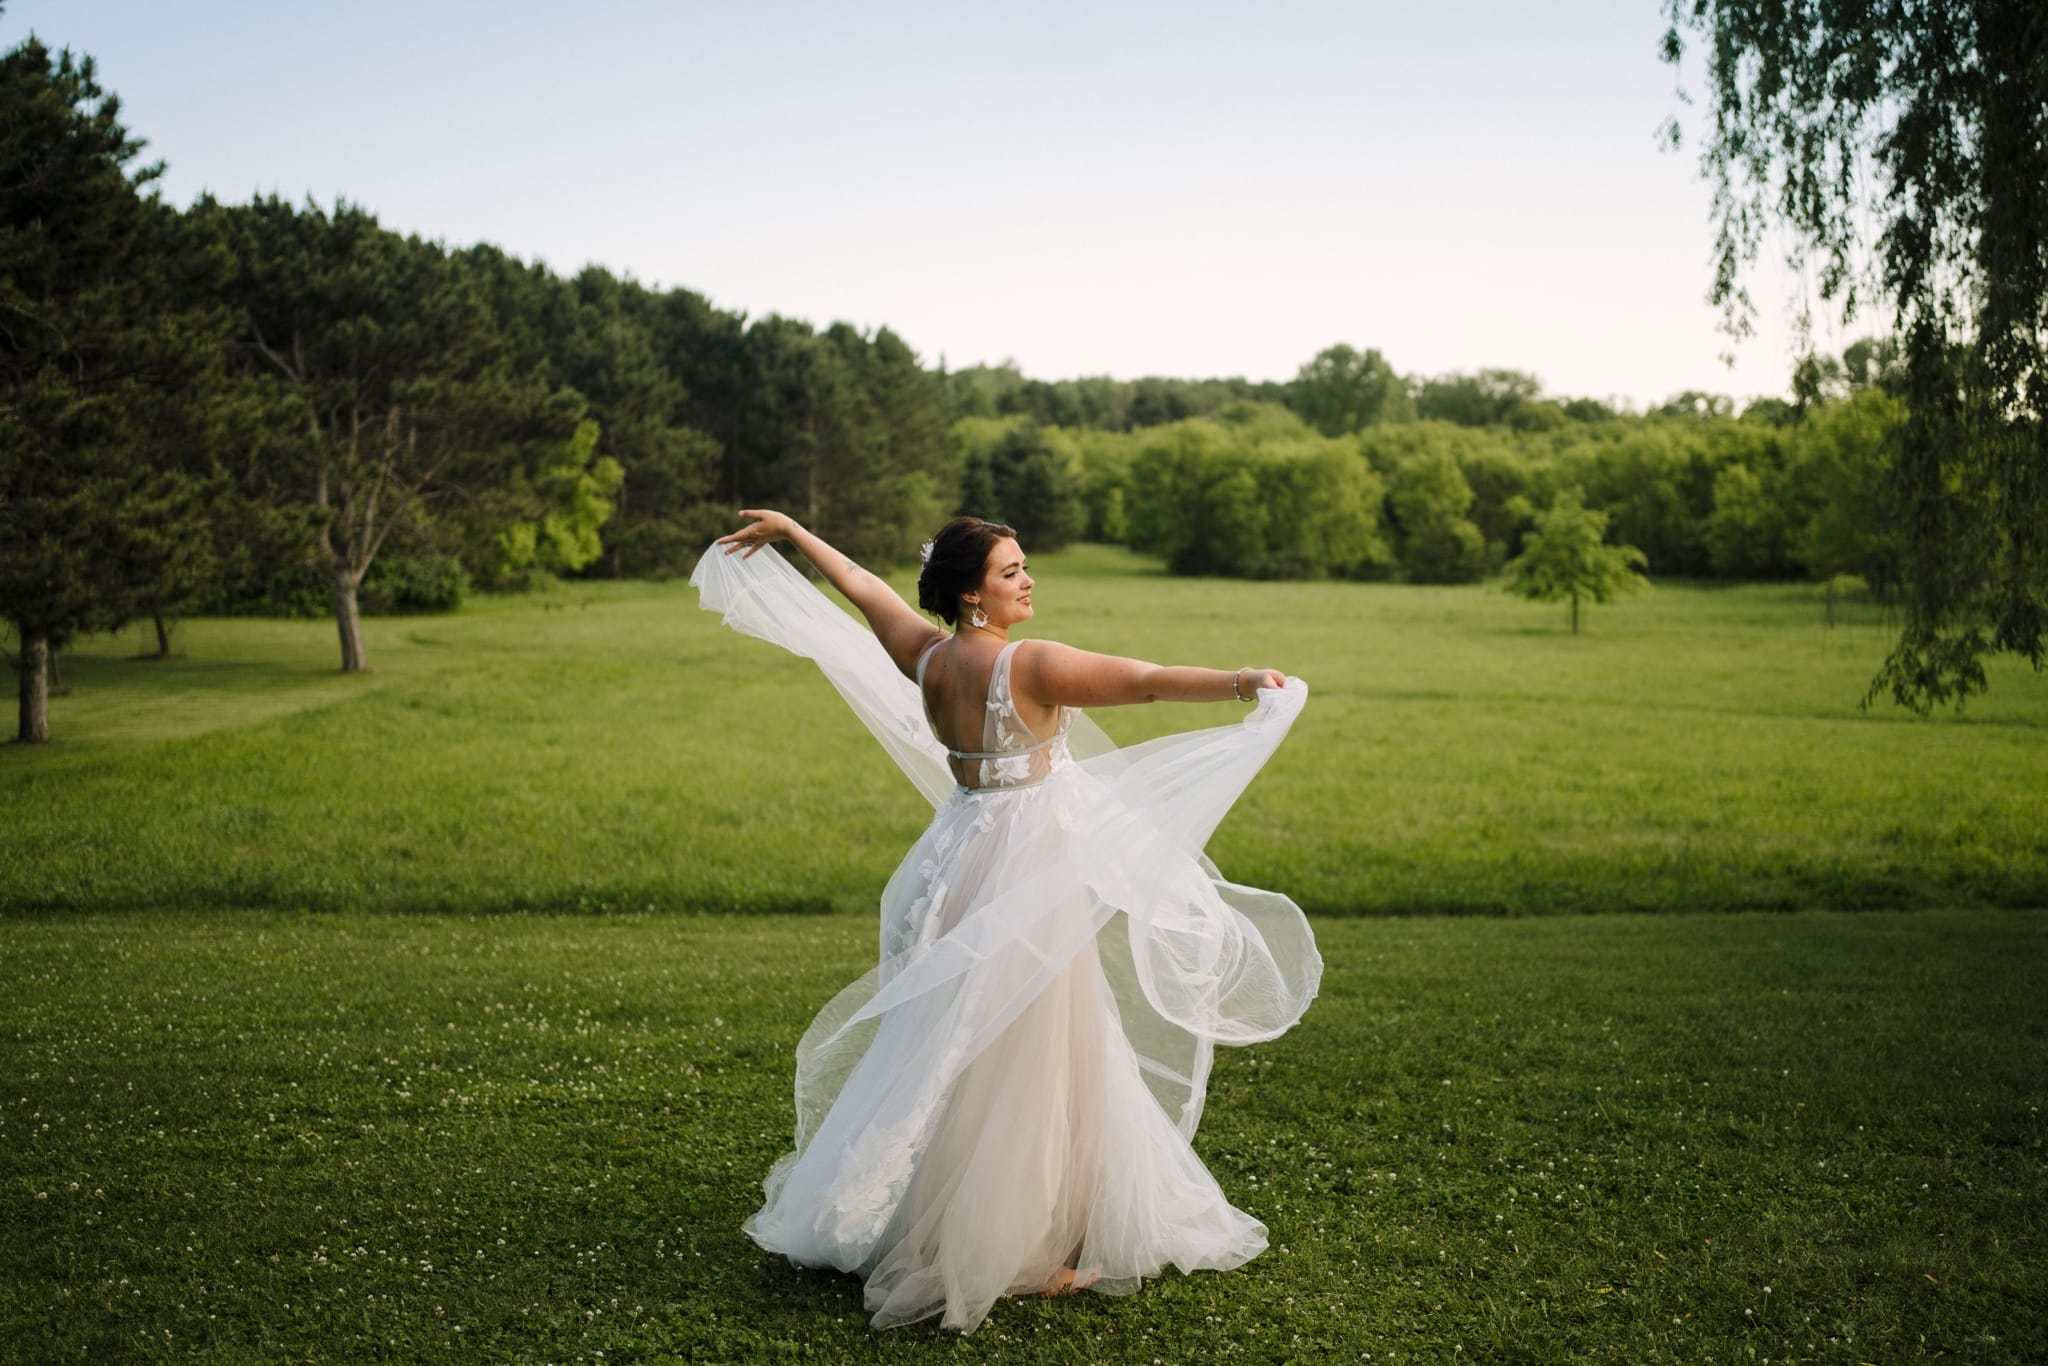 bride twirls in wedding dress in green field